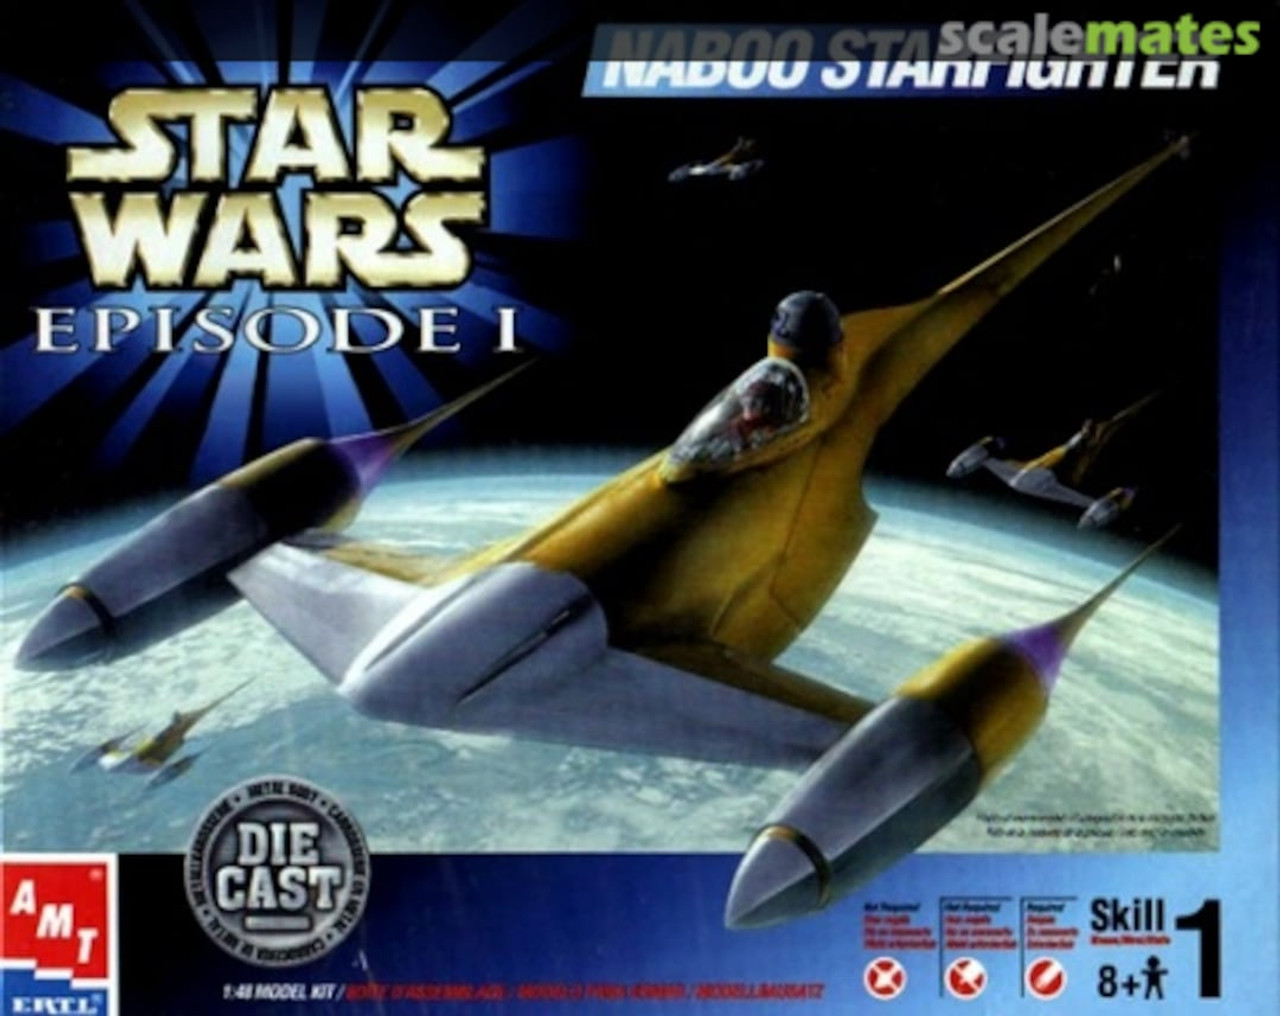 Star Wars Episode 1 Naboo Starfighter Die Cast (1:48 Scale)